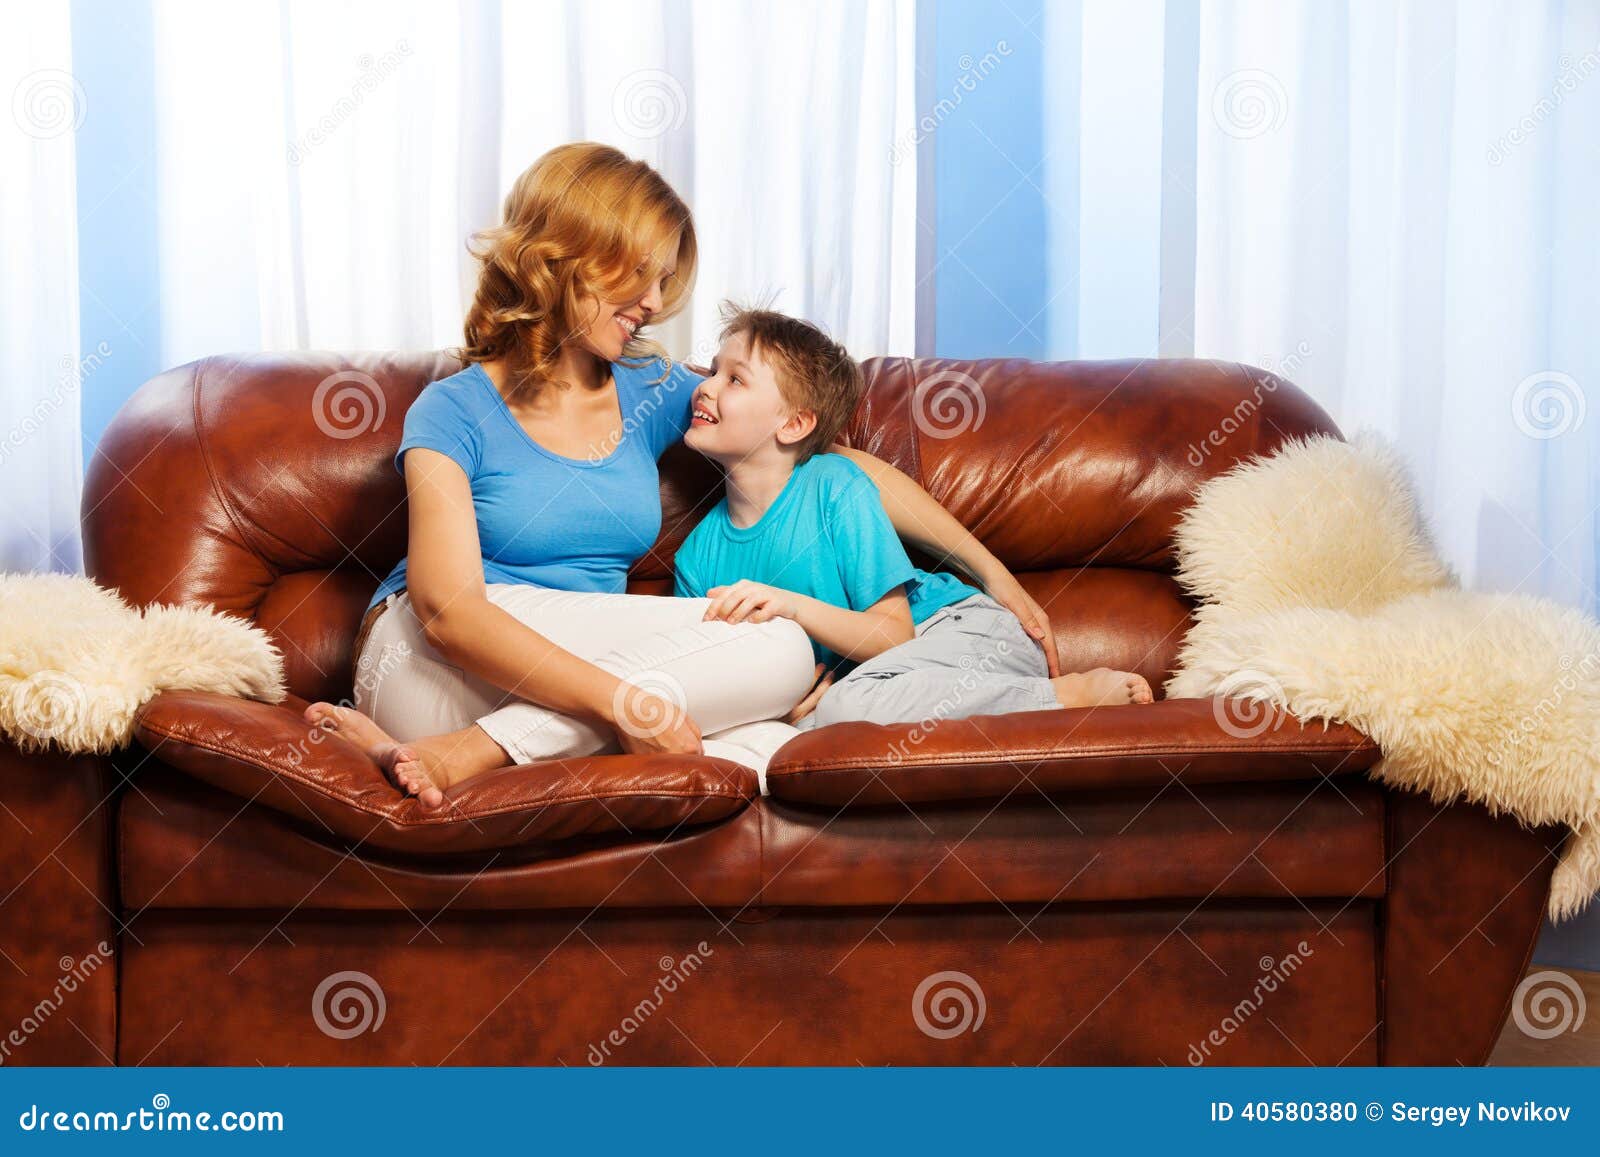 Мамаши на диване. Мама с ребенком на диване. Мама с ребенком сидит на диване. Фотосессия ребенка и мамы на диване.